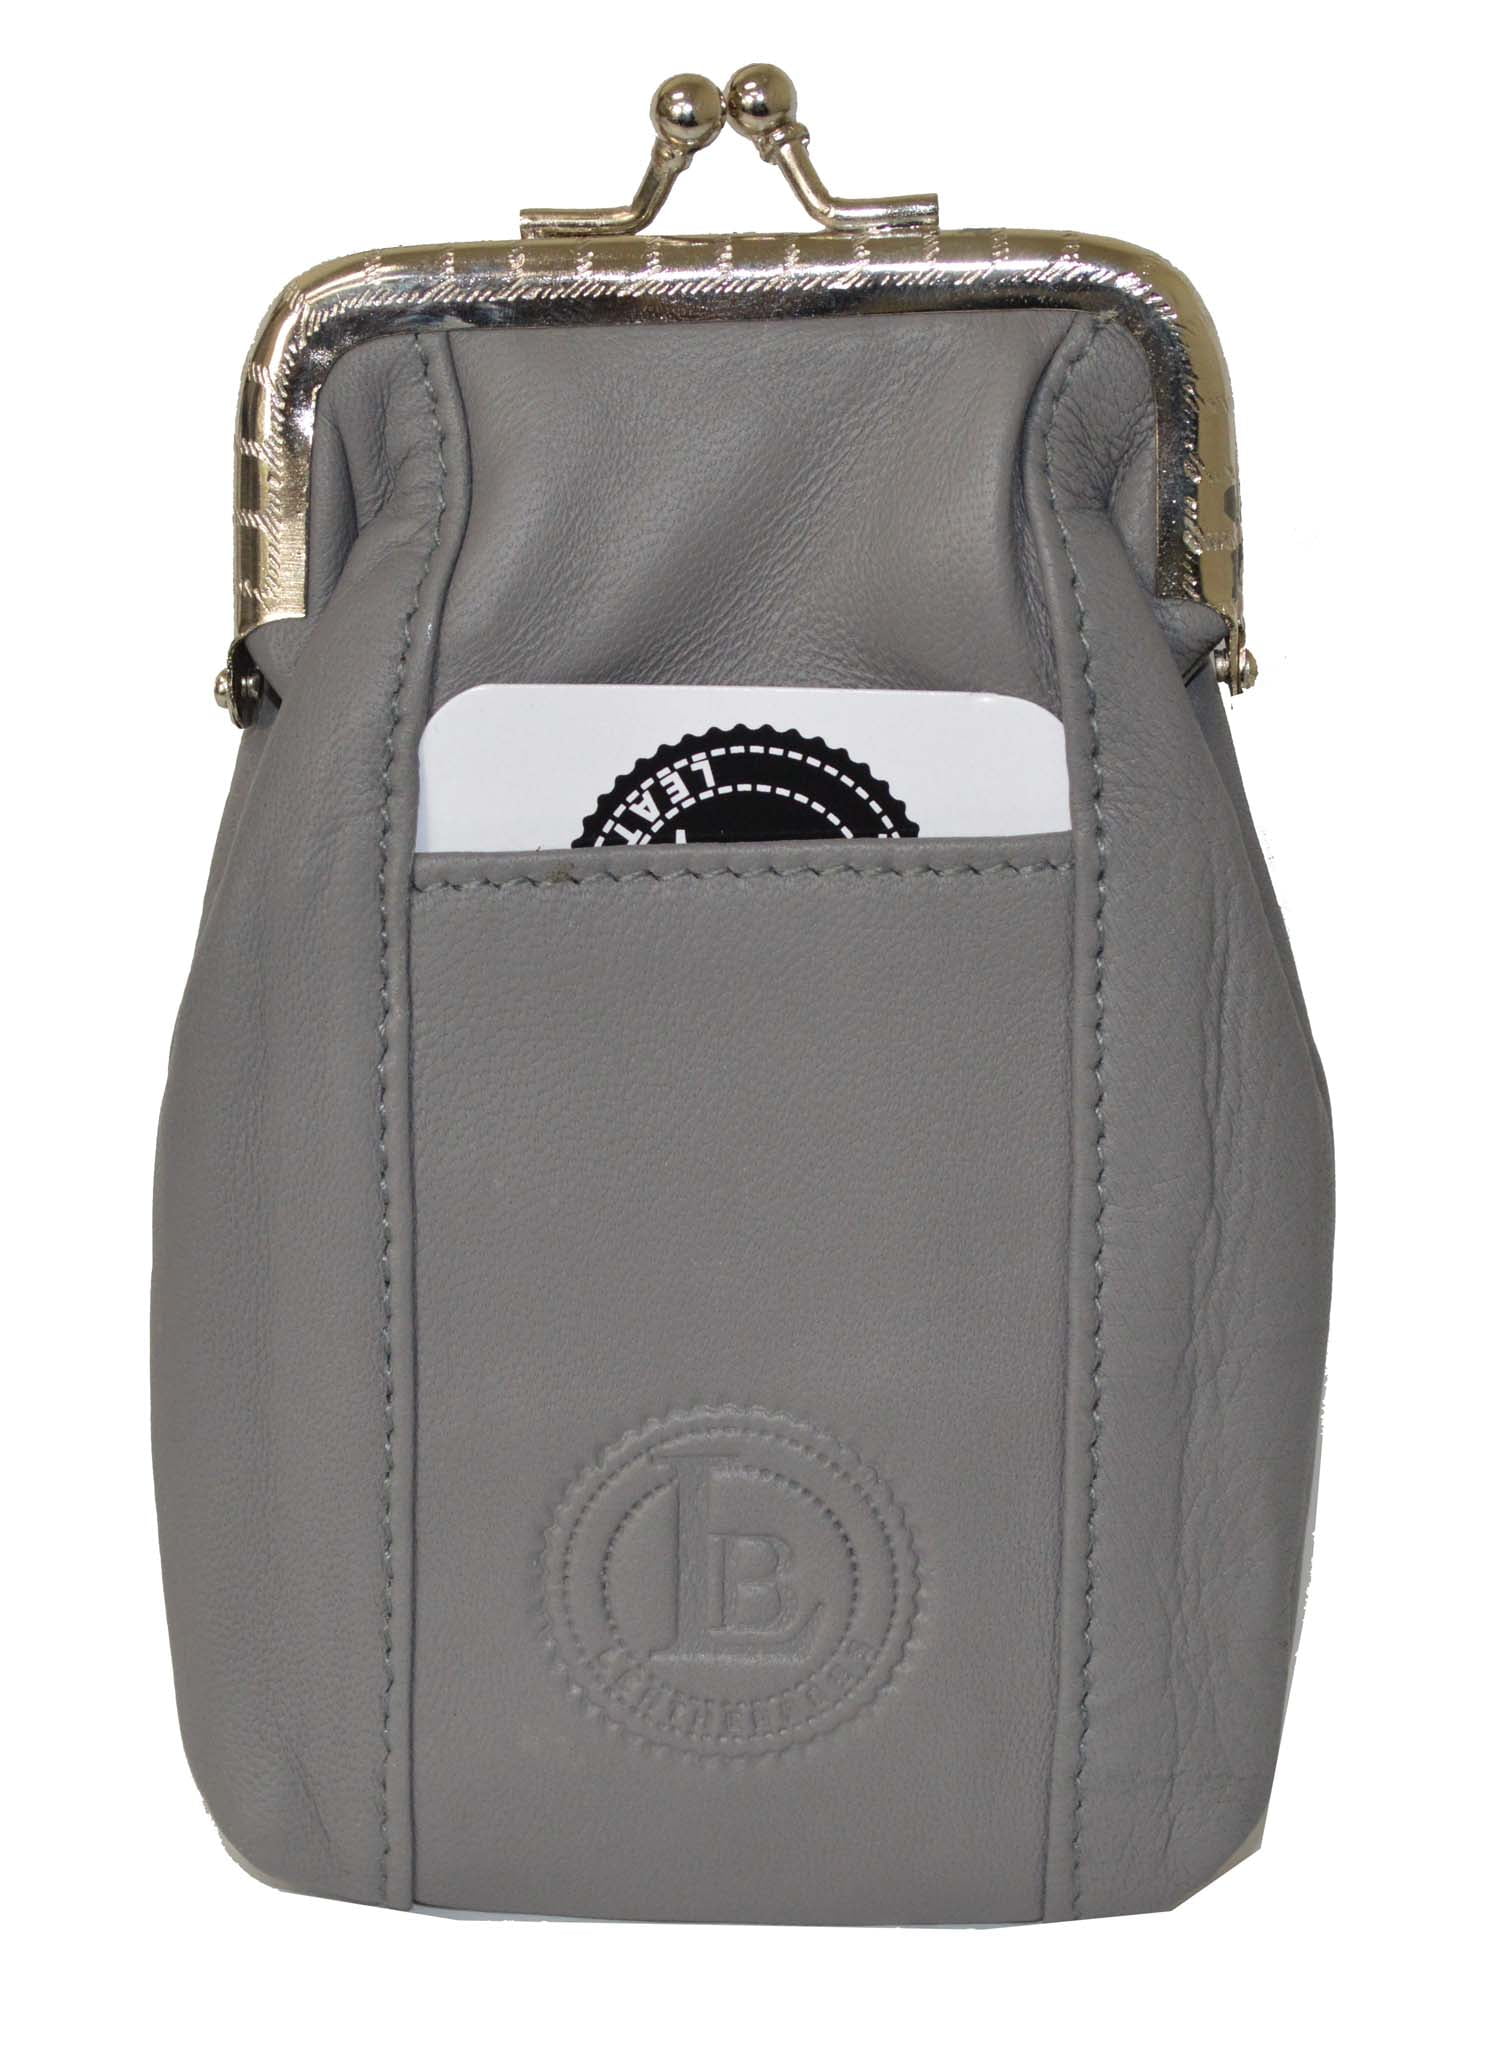 Designer Leather Cigarette Case Pack Holder Regular or 100's Lighter Pocket  by Leatherboss